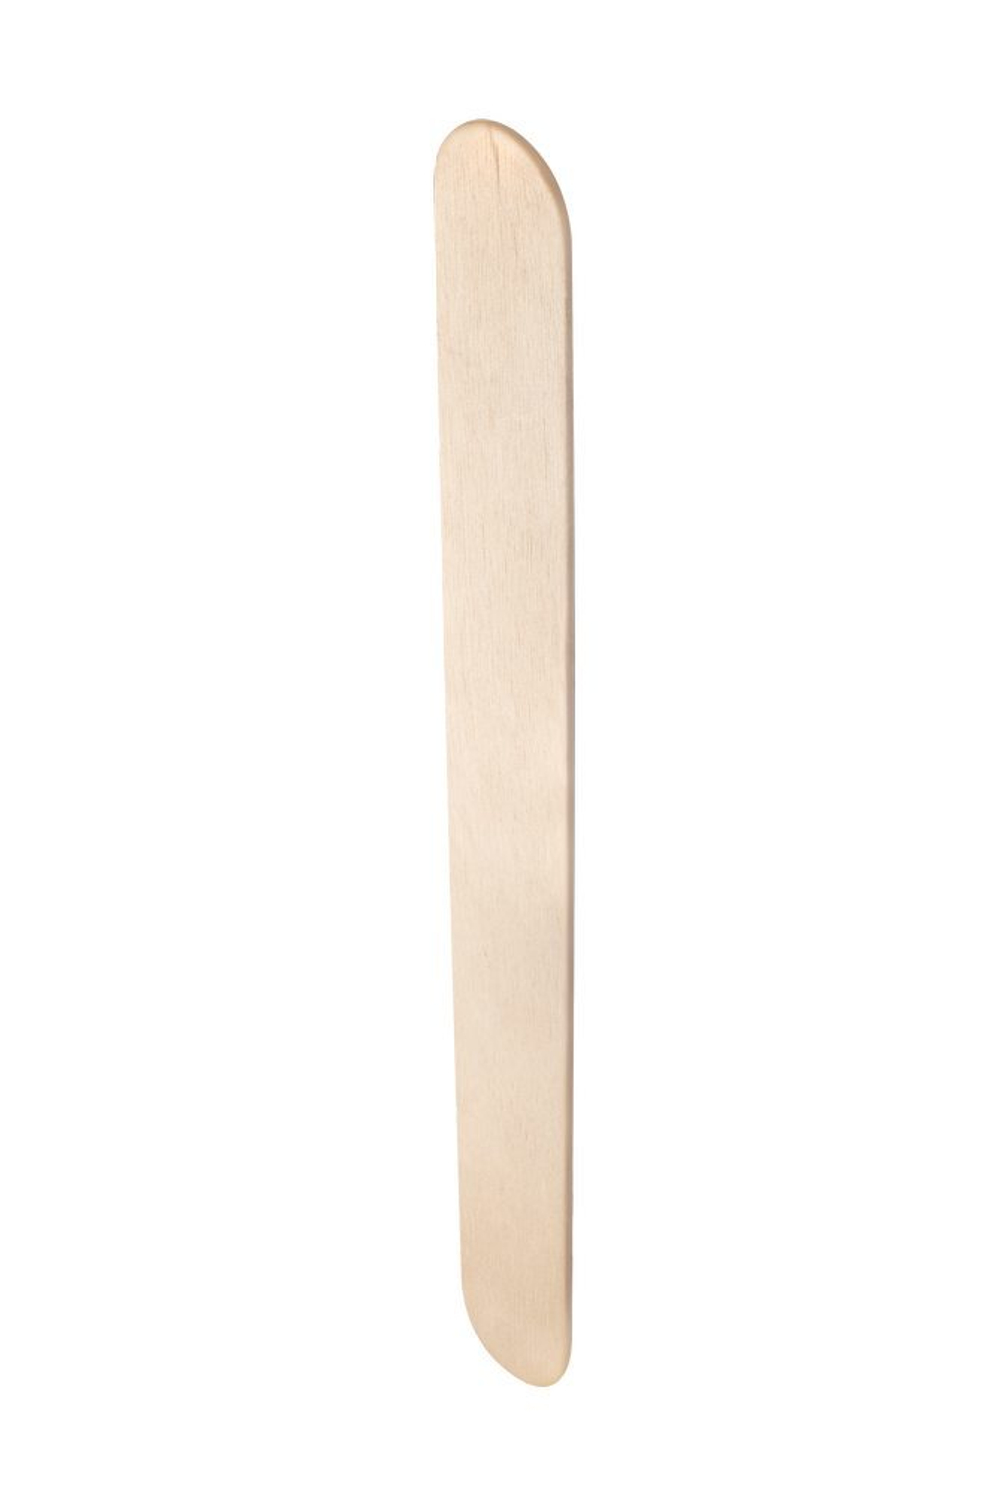 Пилка деревянная одноразовая прямая (основа) EXPERT 20 (1 шт)